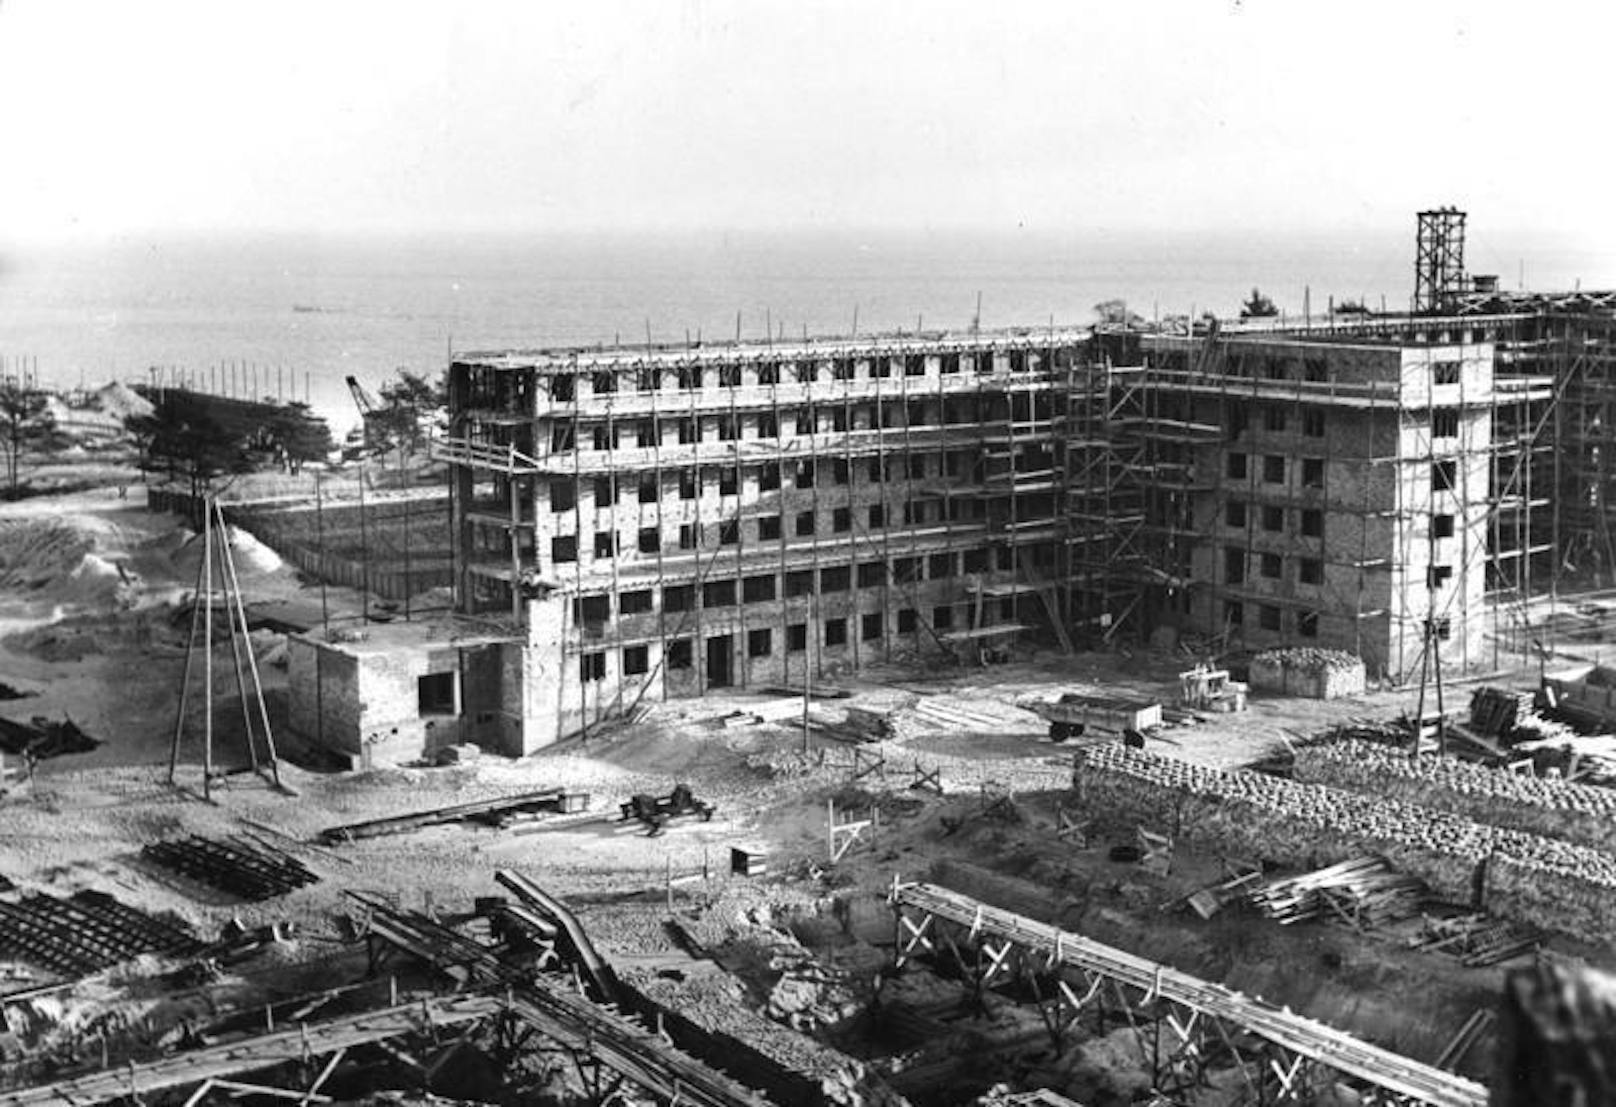 Die NS-Organisation "Kraft durch Freude" (KdF) baute die riesige Anlage zwischen 1936 und 1939.